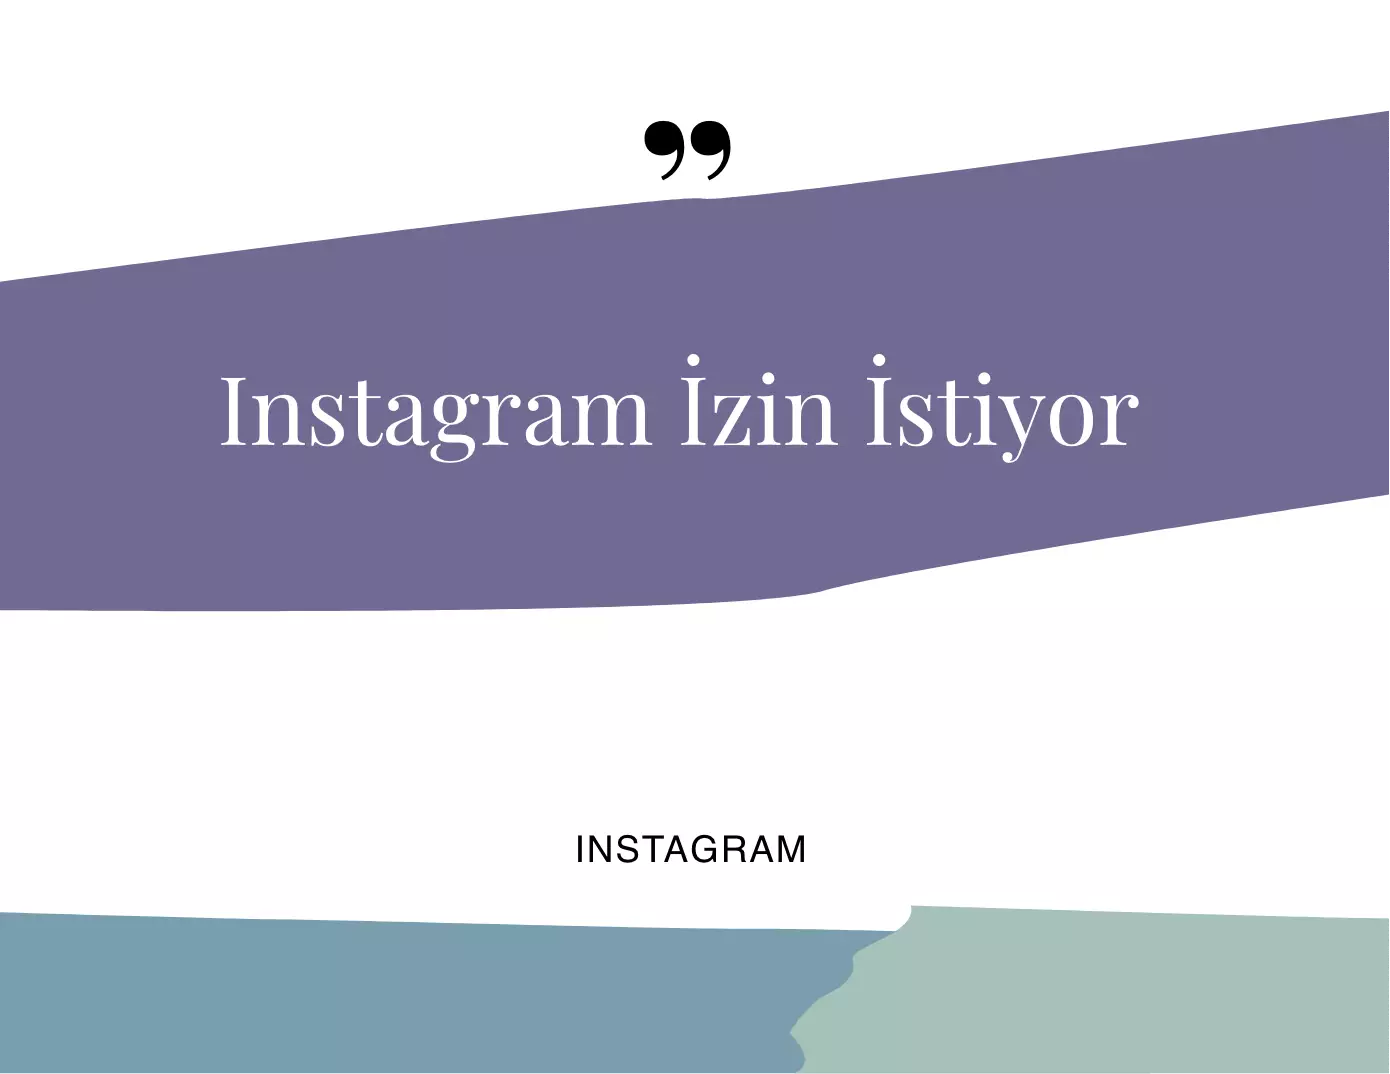 Instagram IOS için Ücretsiz  Aplikasyon'a İzin İstiyor!